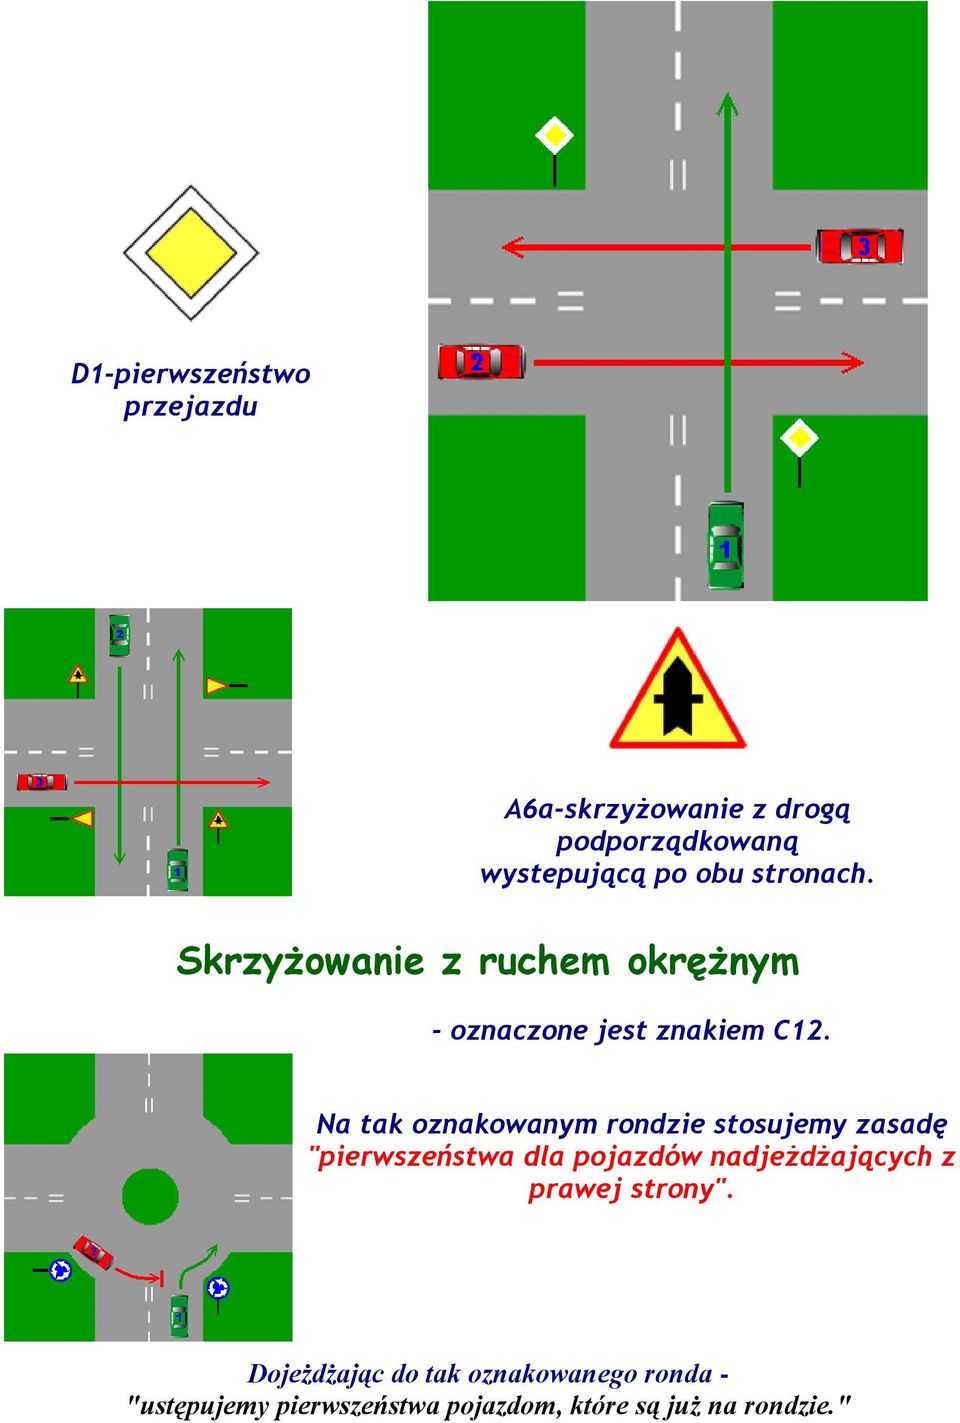 Na tak oznakowanym rondzie stosujemy zasadę "pierwszeństwa dla pojazdów nadjeżdżających z